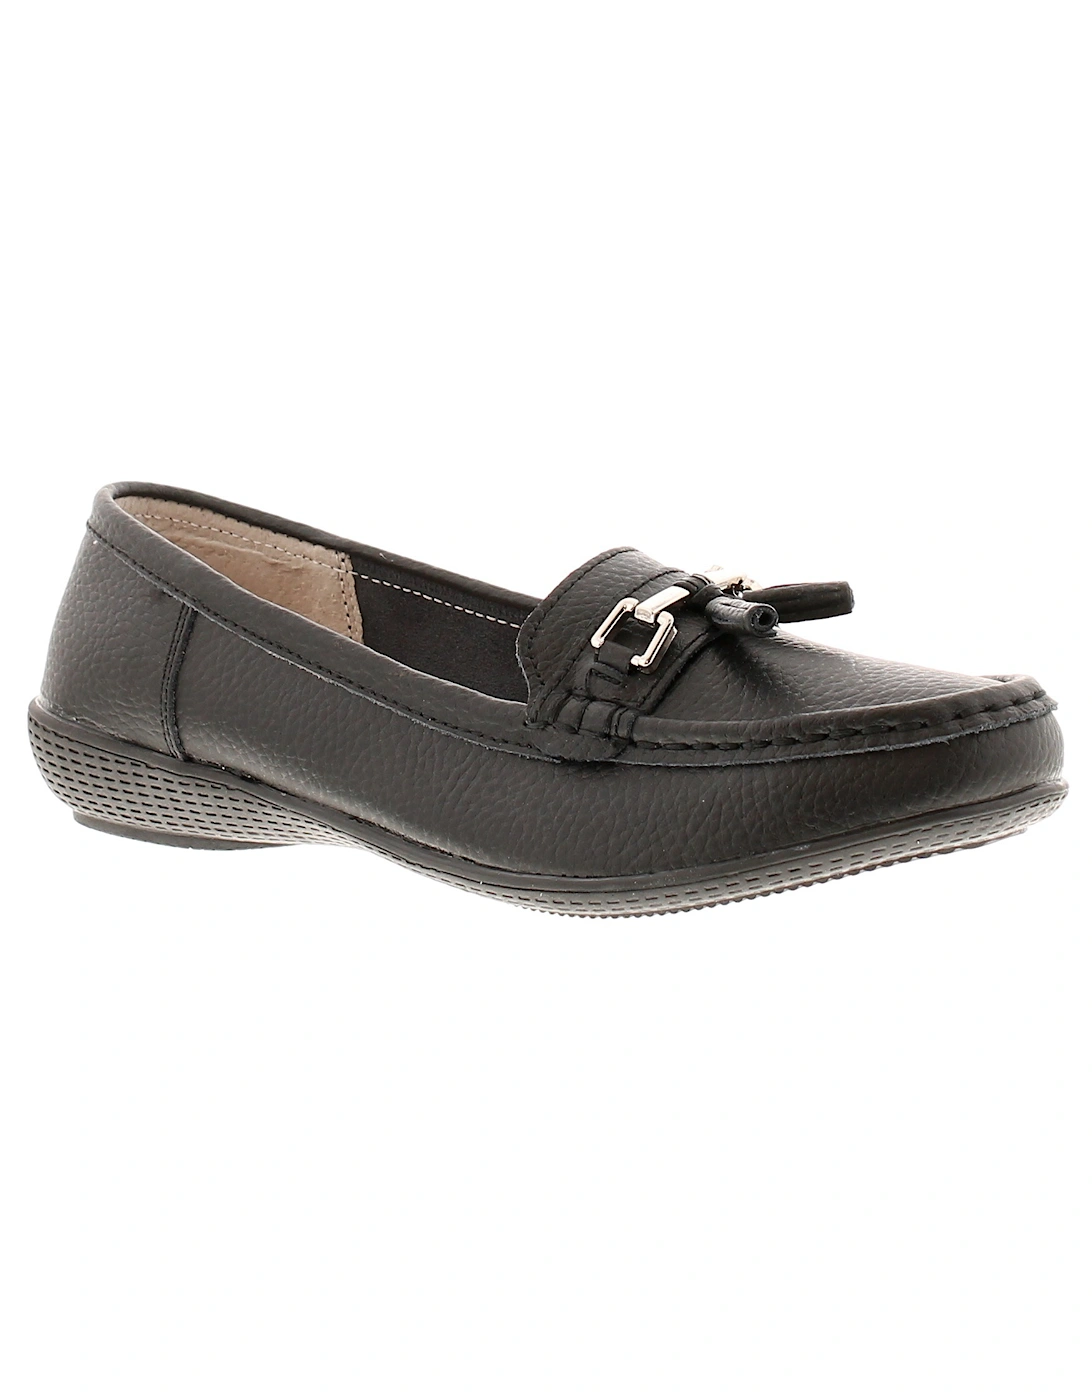 Womens Shoes Flat Nautical Leather Slip On black UK Size, 6 of 5